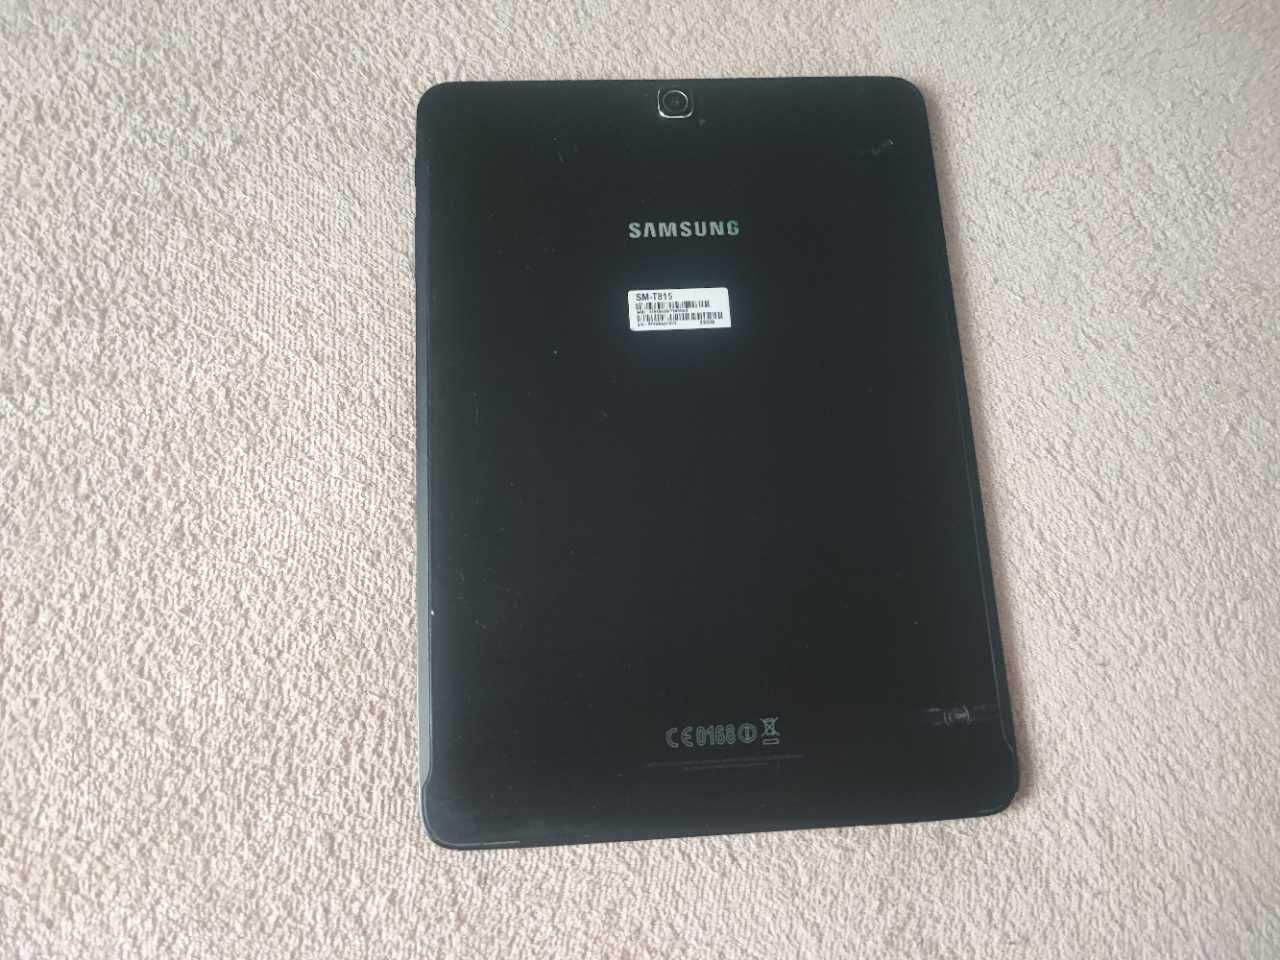 Samsung Galaxy Tab S2 9.7 SM-T815 3/32 LTE + nawigacja dla zawodowców